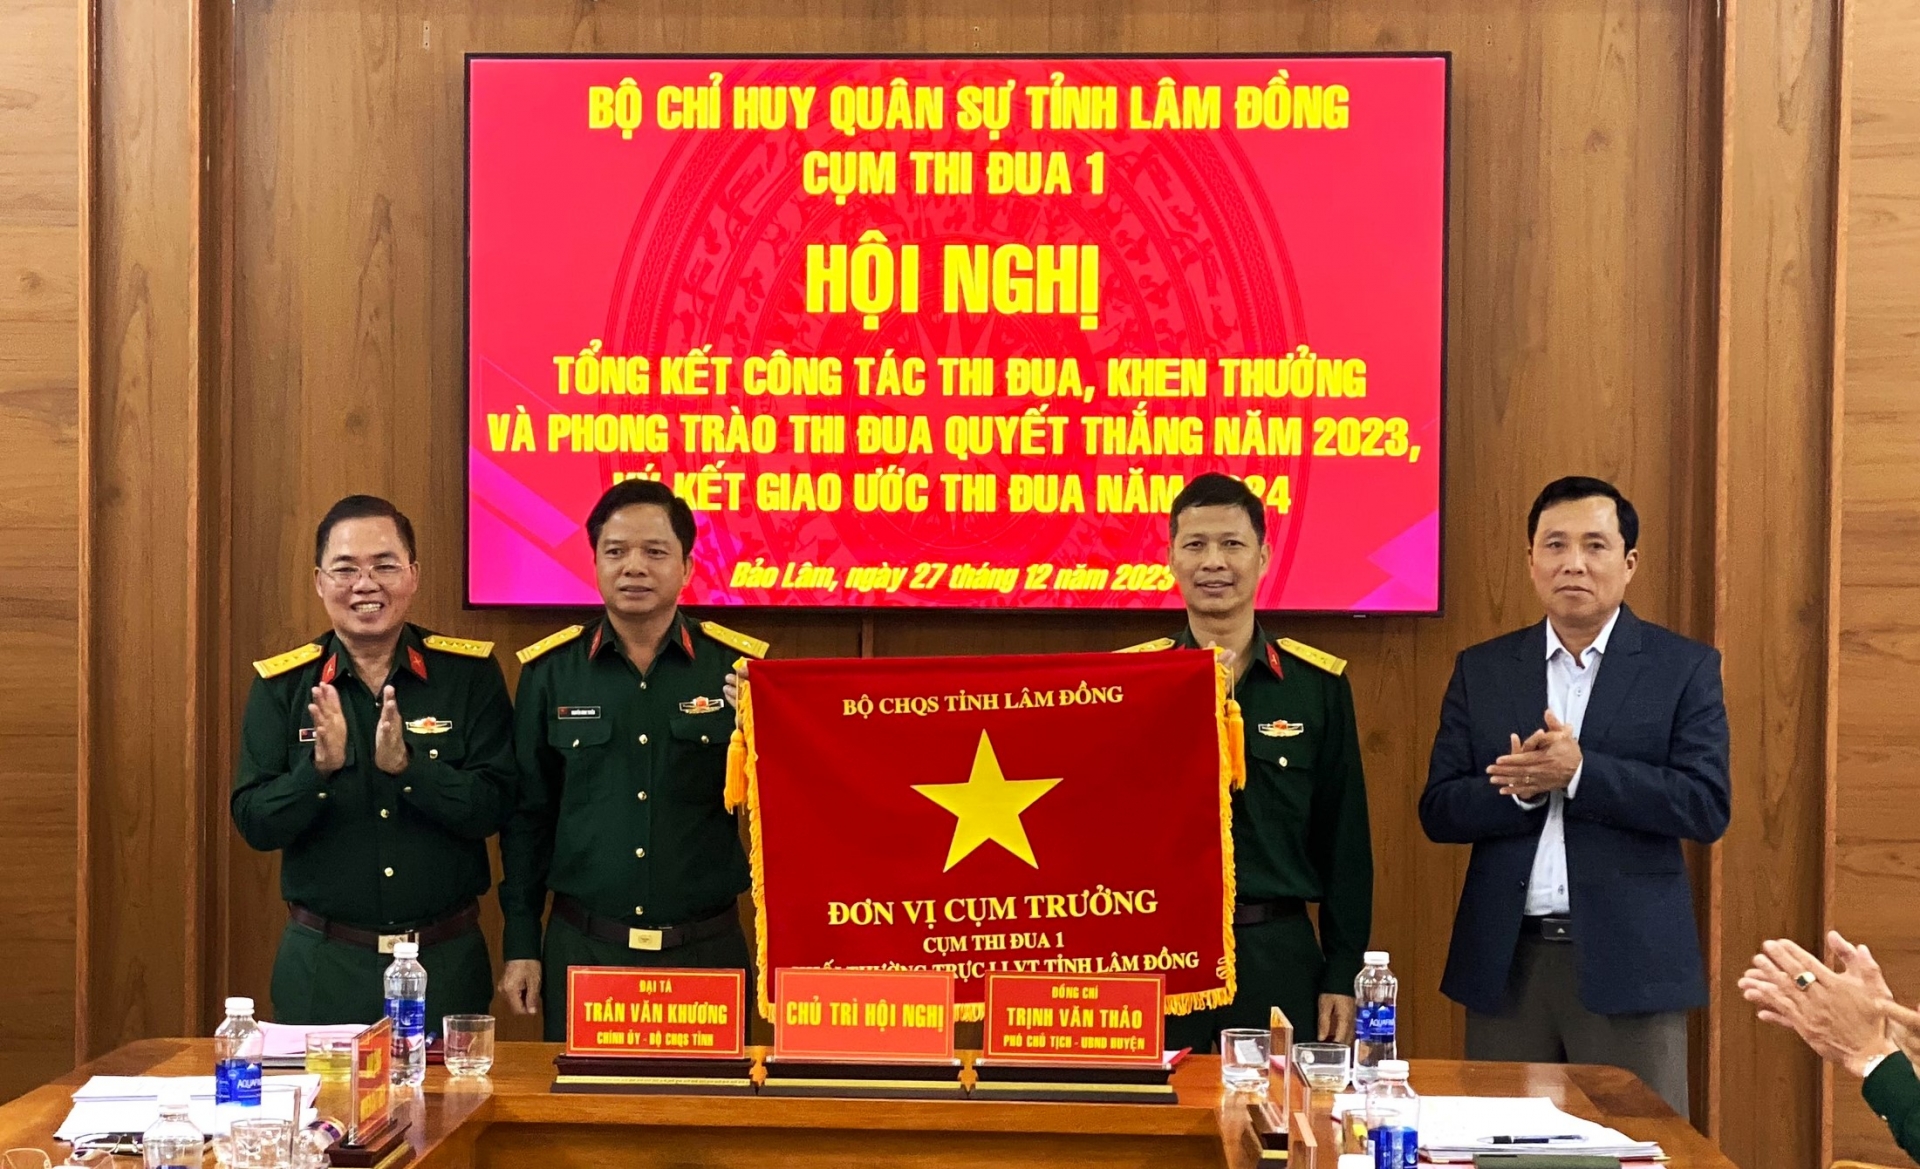 Cụm thi đua số 1 lực lượng vũ trang tỉnh Lâm Đồng tổng kết Phong trào thi đua Quyết thắng năm 2023